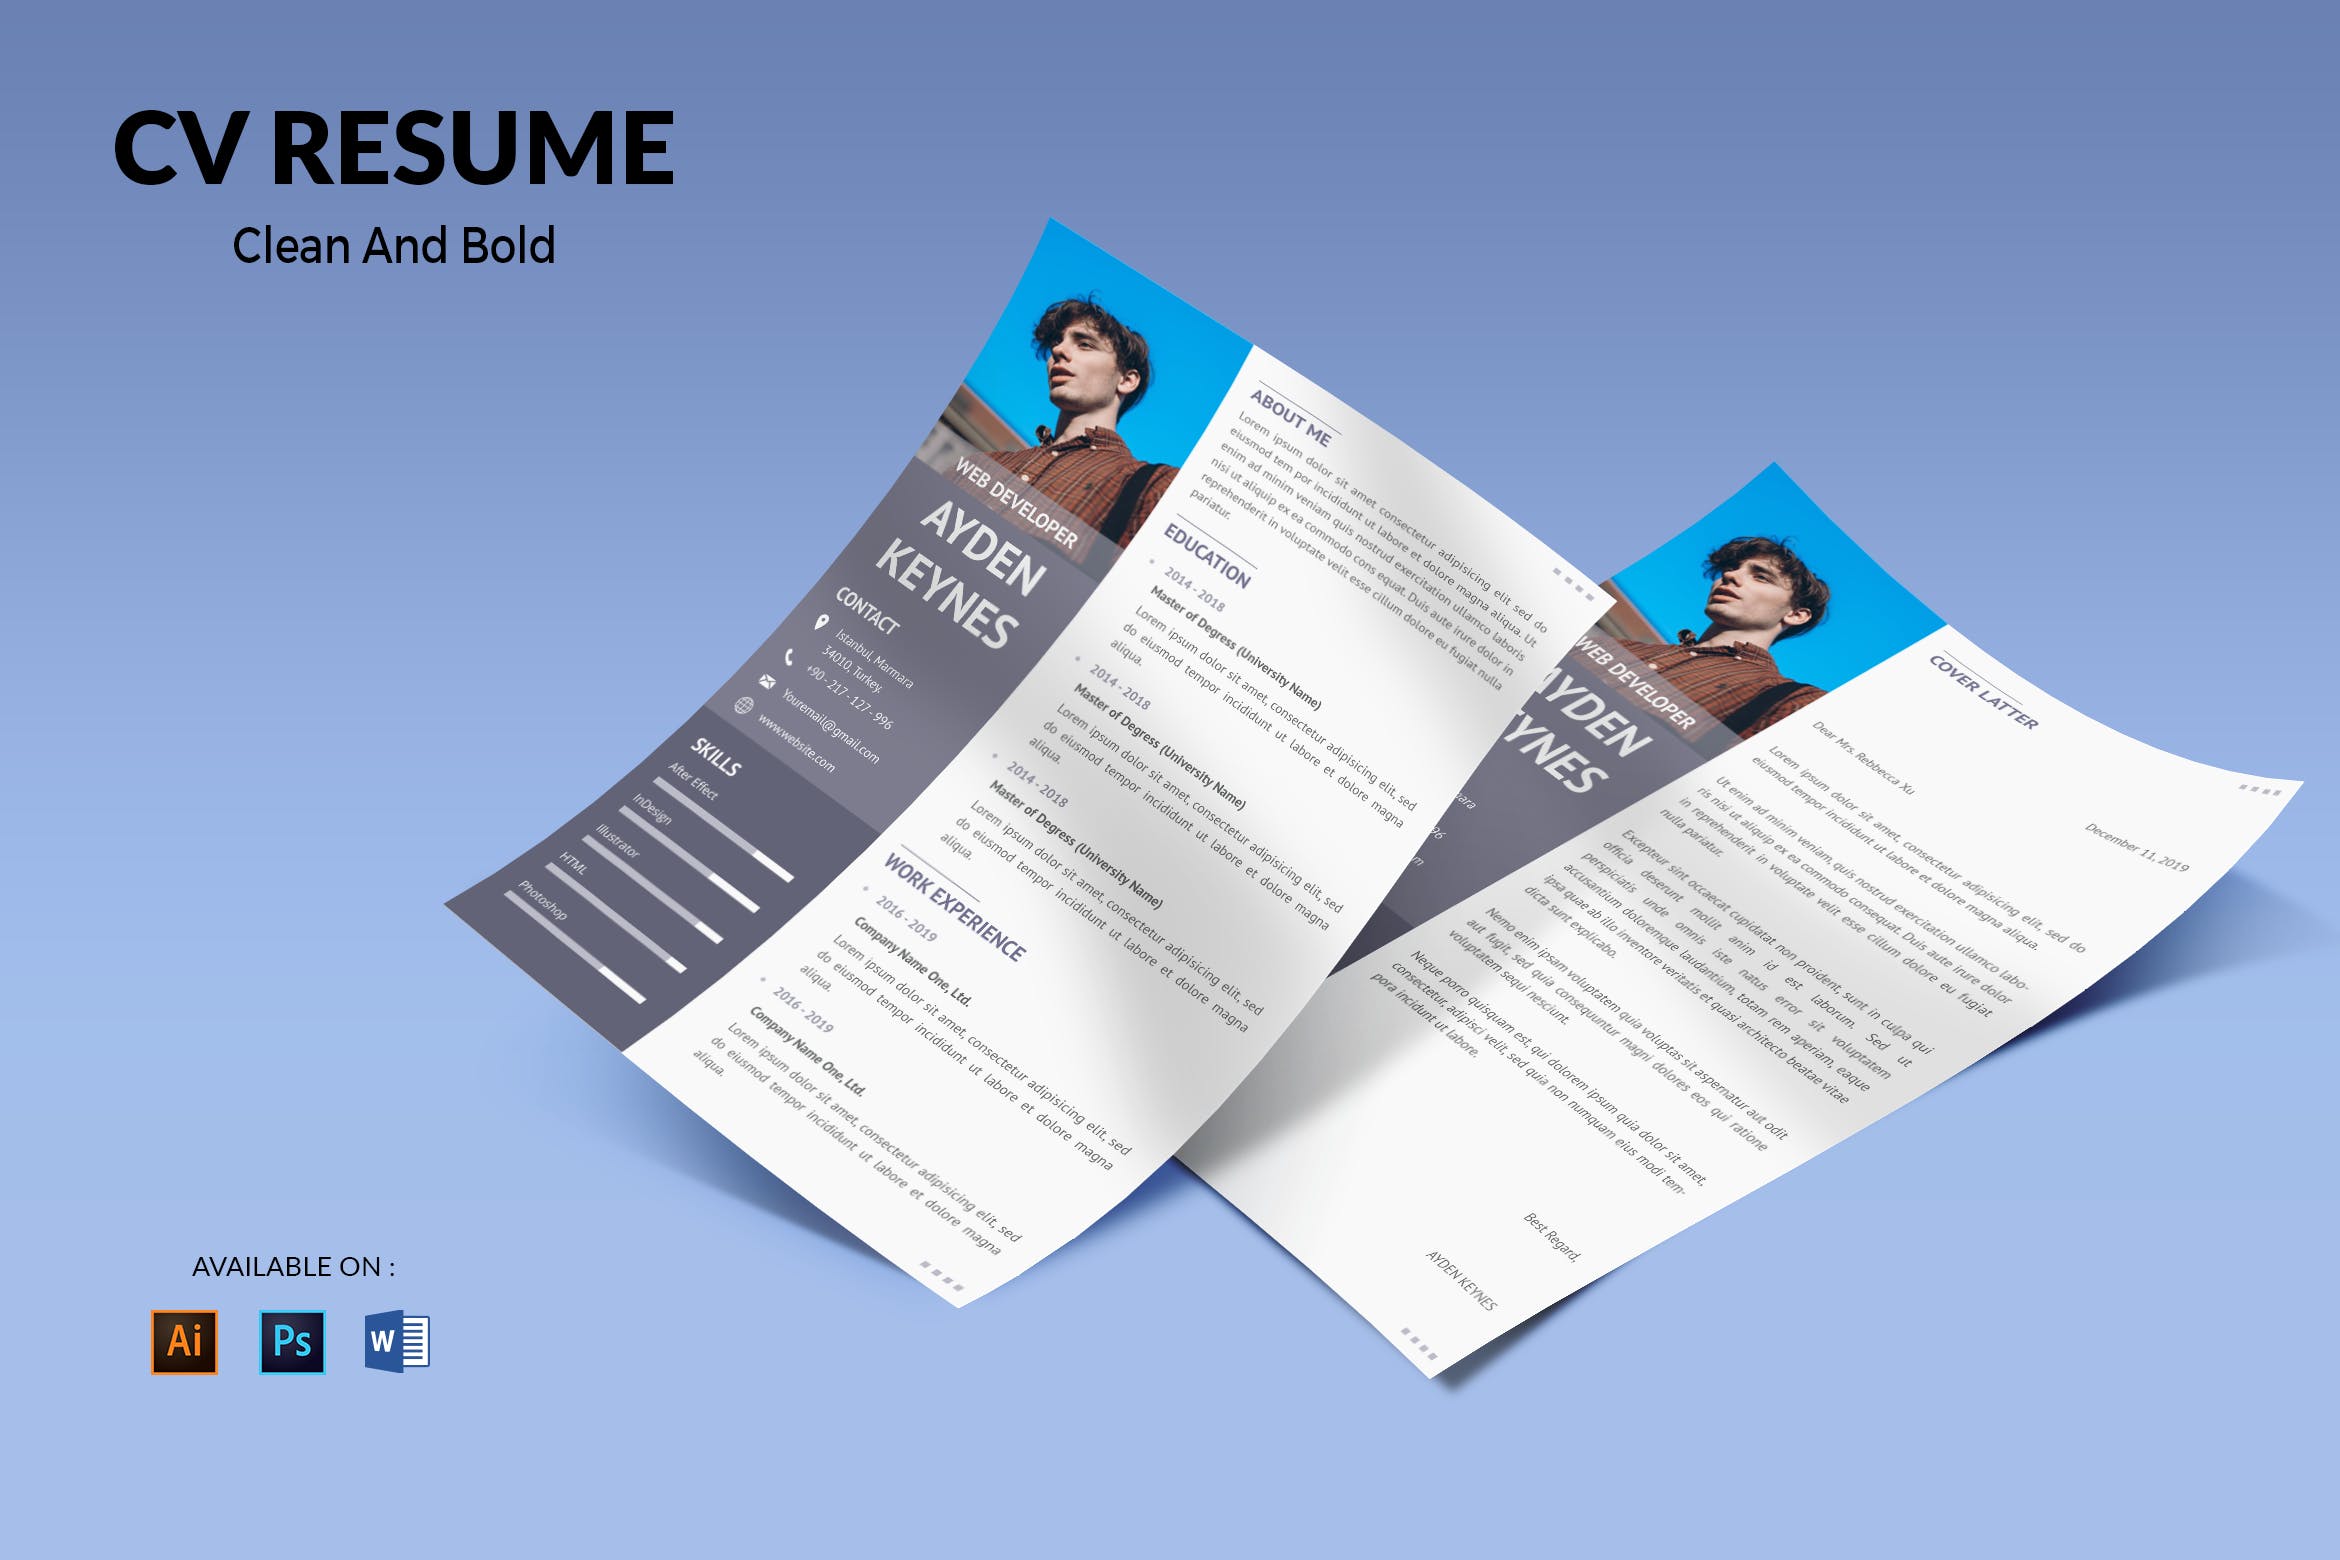 网页开发职位电子大洋岛精选简历模板 CV Resume Simple And Elegant插图